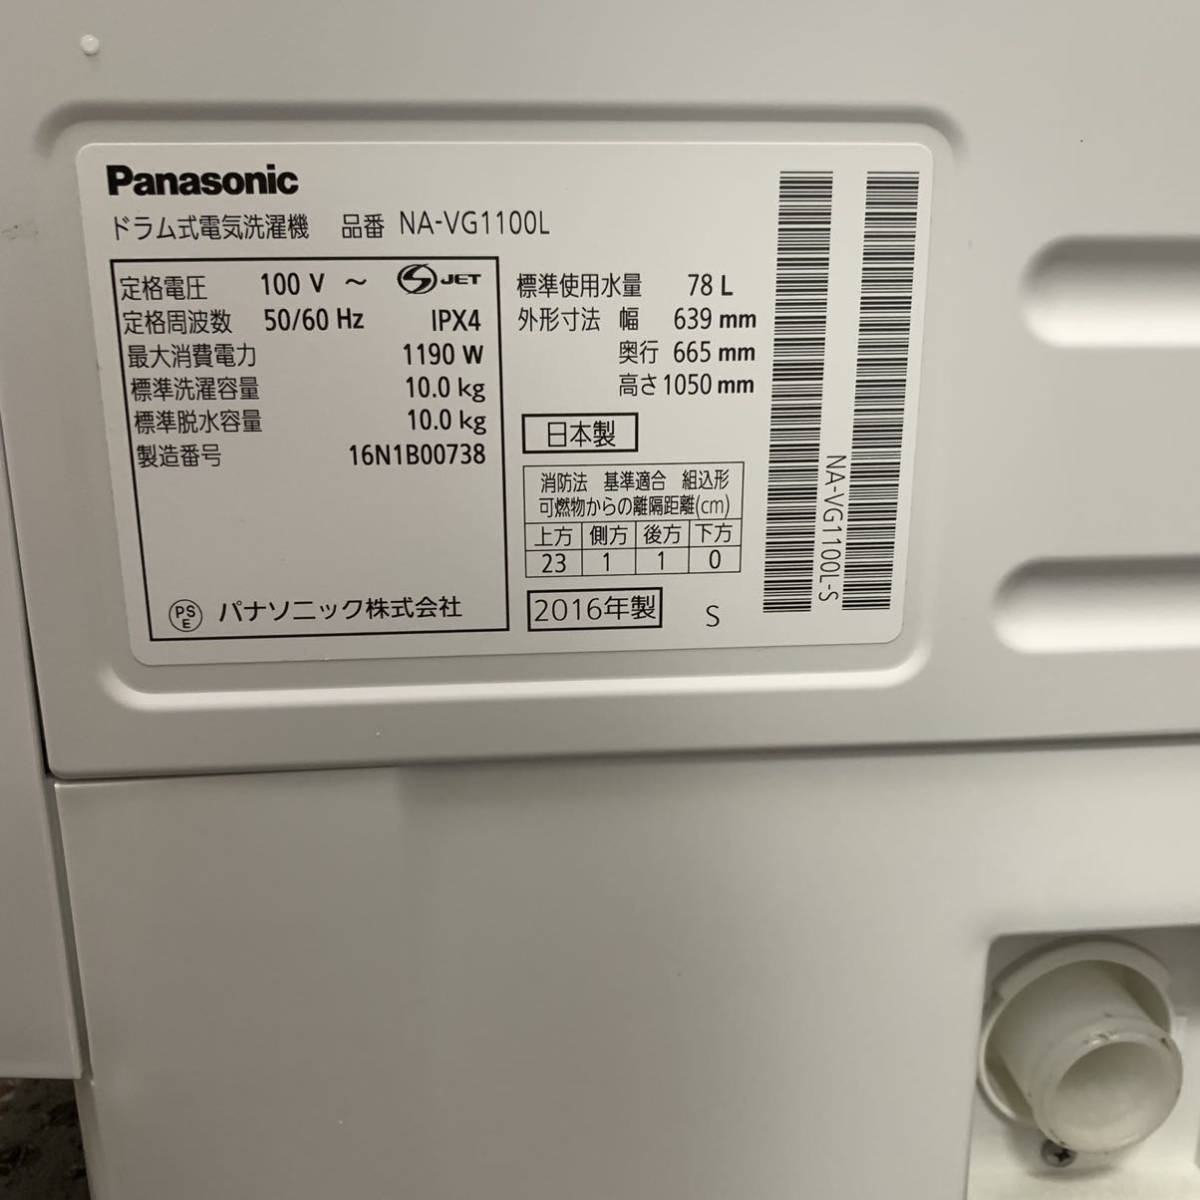 Y Panasonic パナソニック ドラム洗濯機 NA-VG1100L 左開きタイプ 10kg